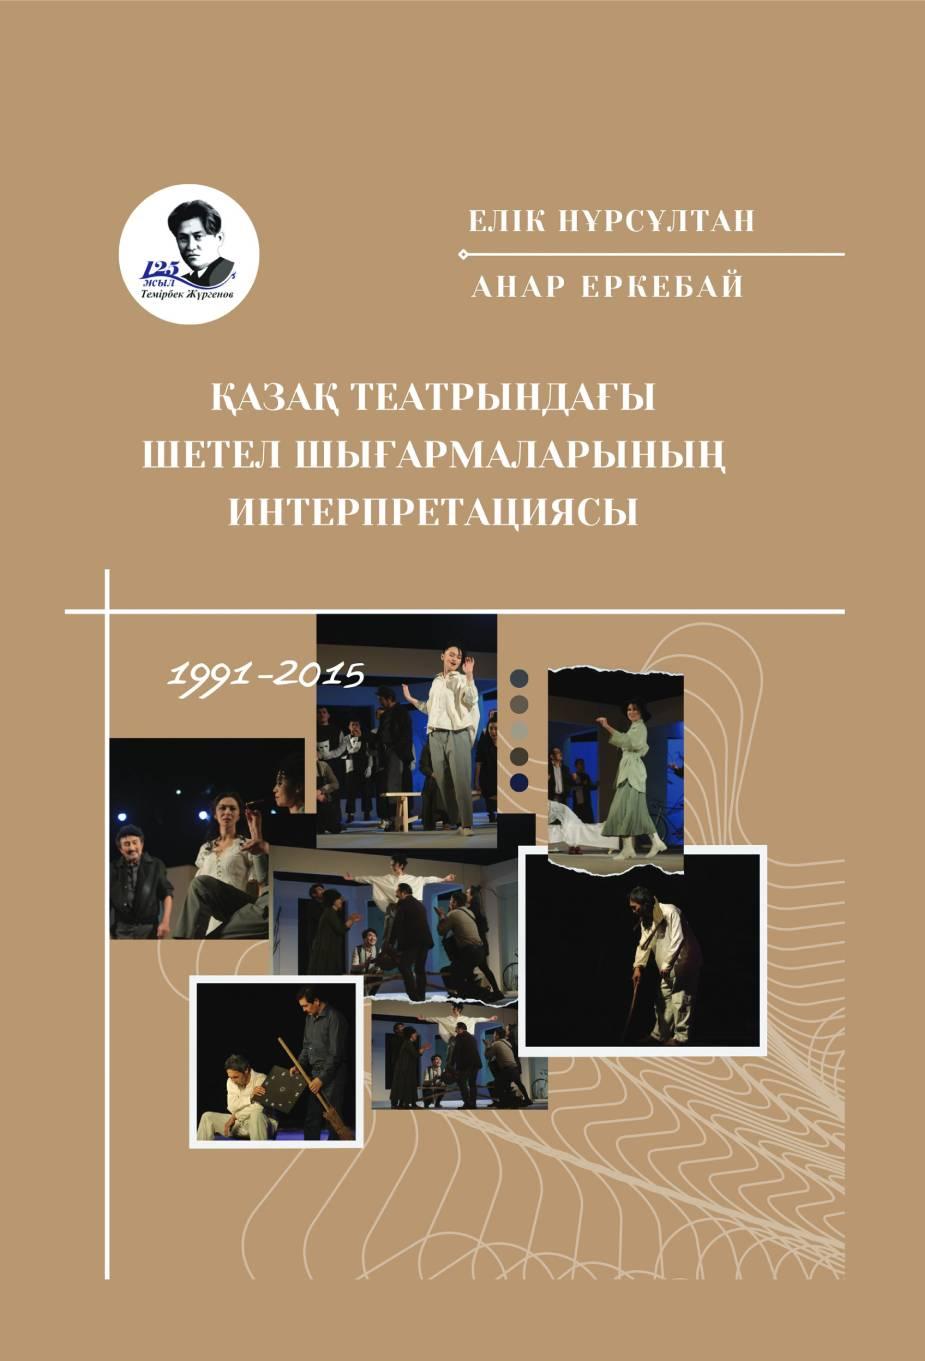 Қазақ театрындағы шетел шығармаларыныңинтерпретациясы (1991-2015). Монография